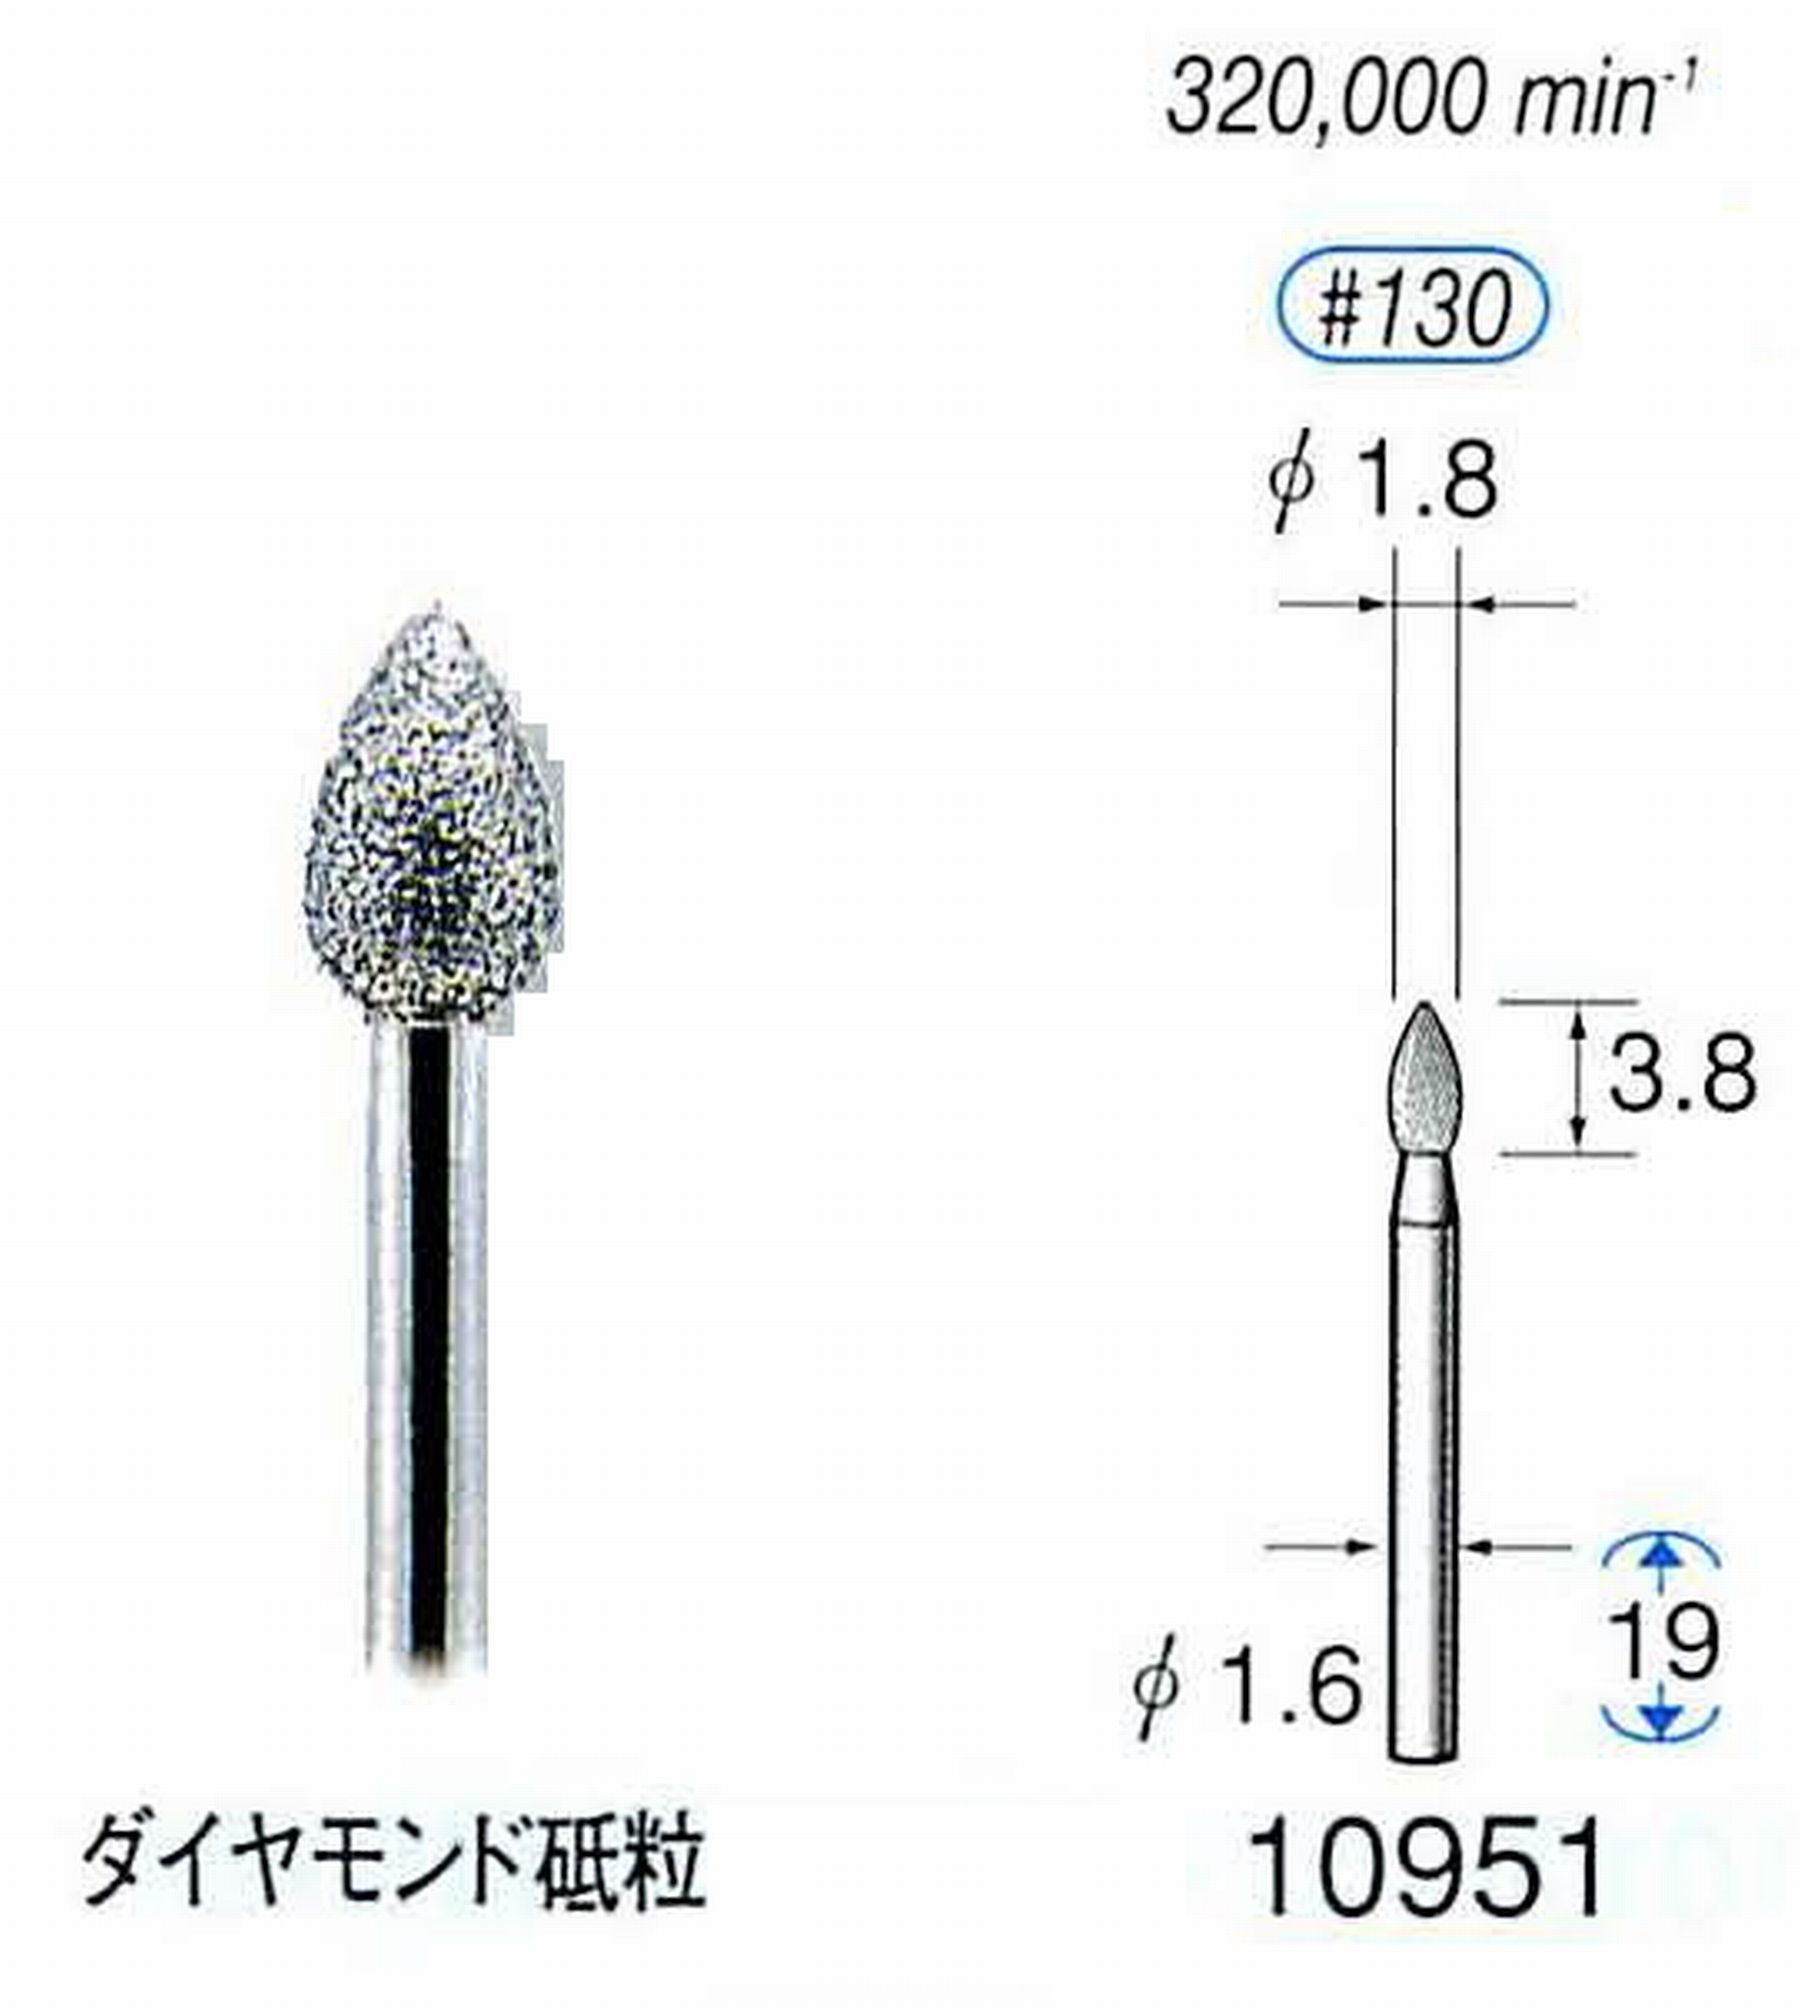 ナカニシ/NAKANISHI 電着ダイヤモンドバー(ミニチュアタイプ)ダイヤモンド砥粒 軸径(シャンク)φ1.6mm 10951